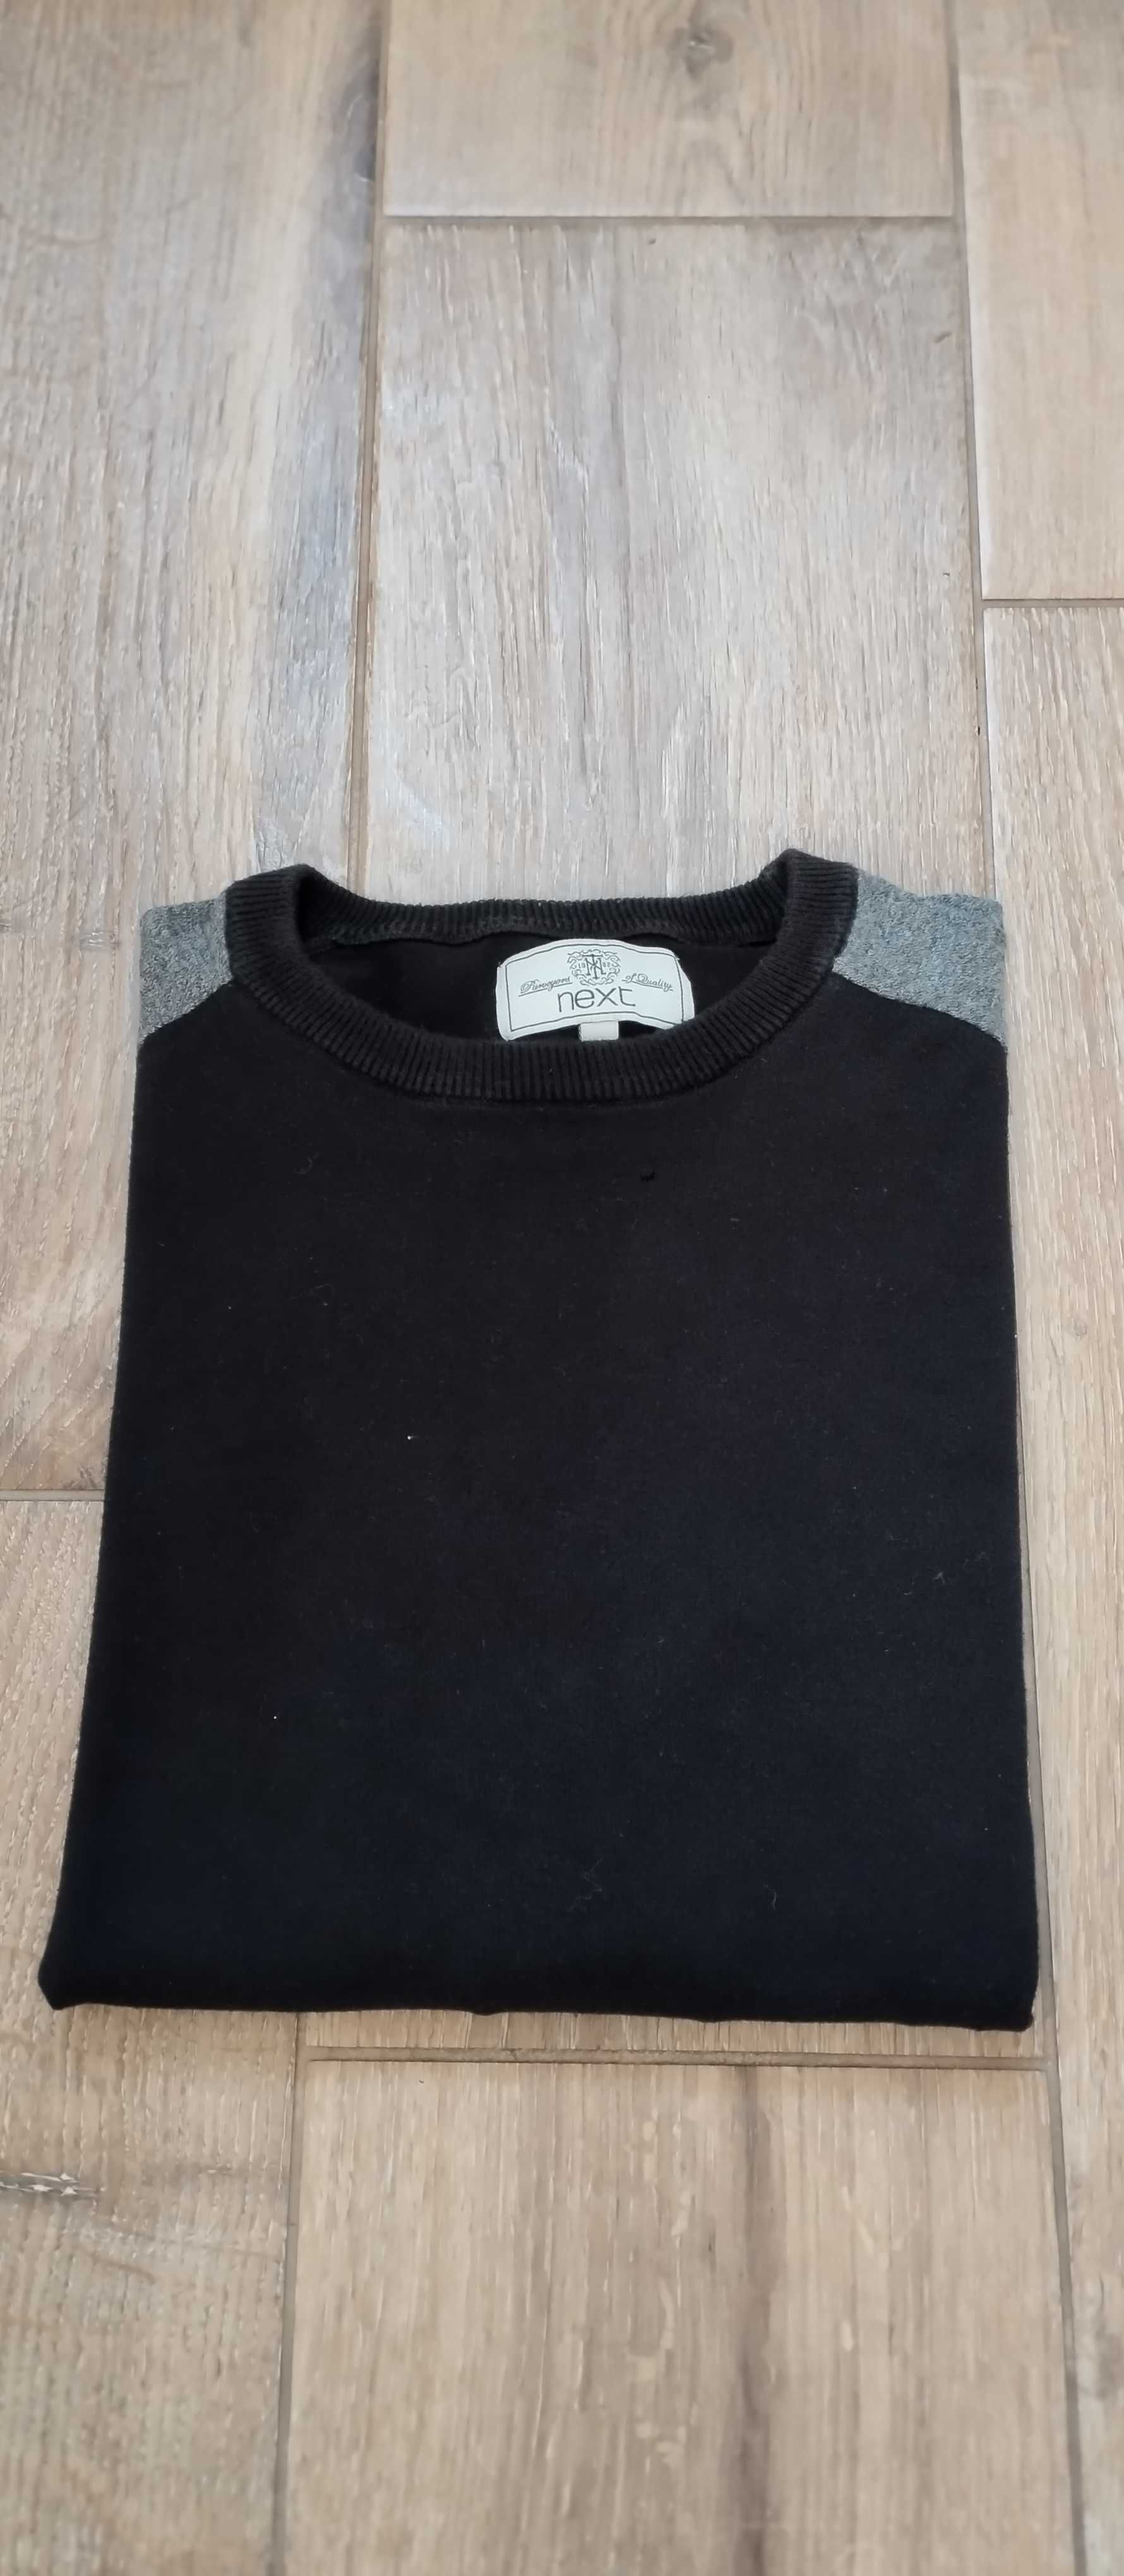 Sweter z okrągłym dekoltem męski czarny M/48 Next